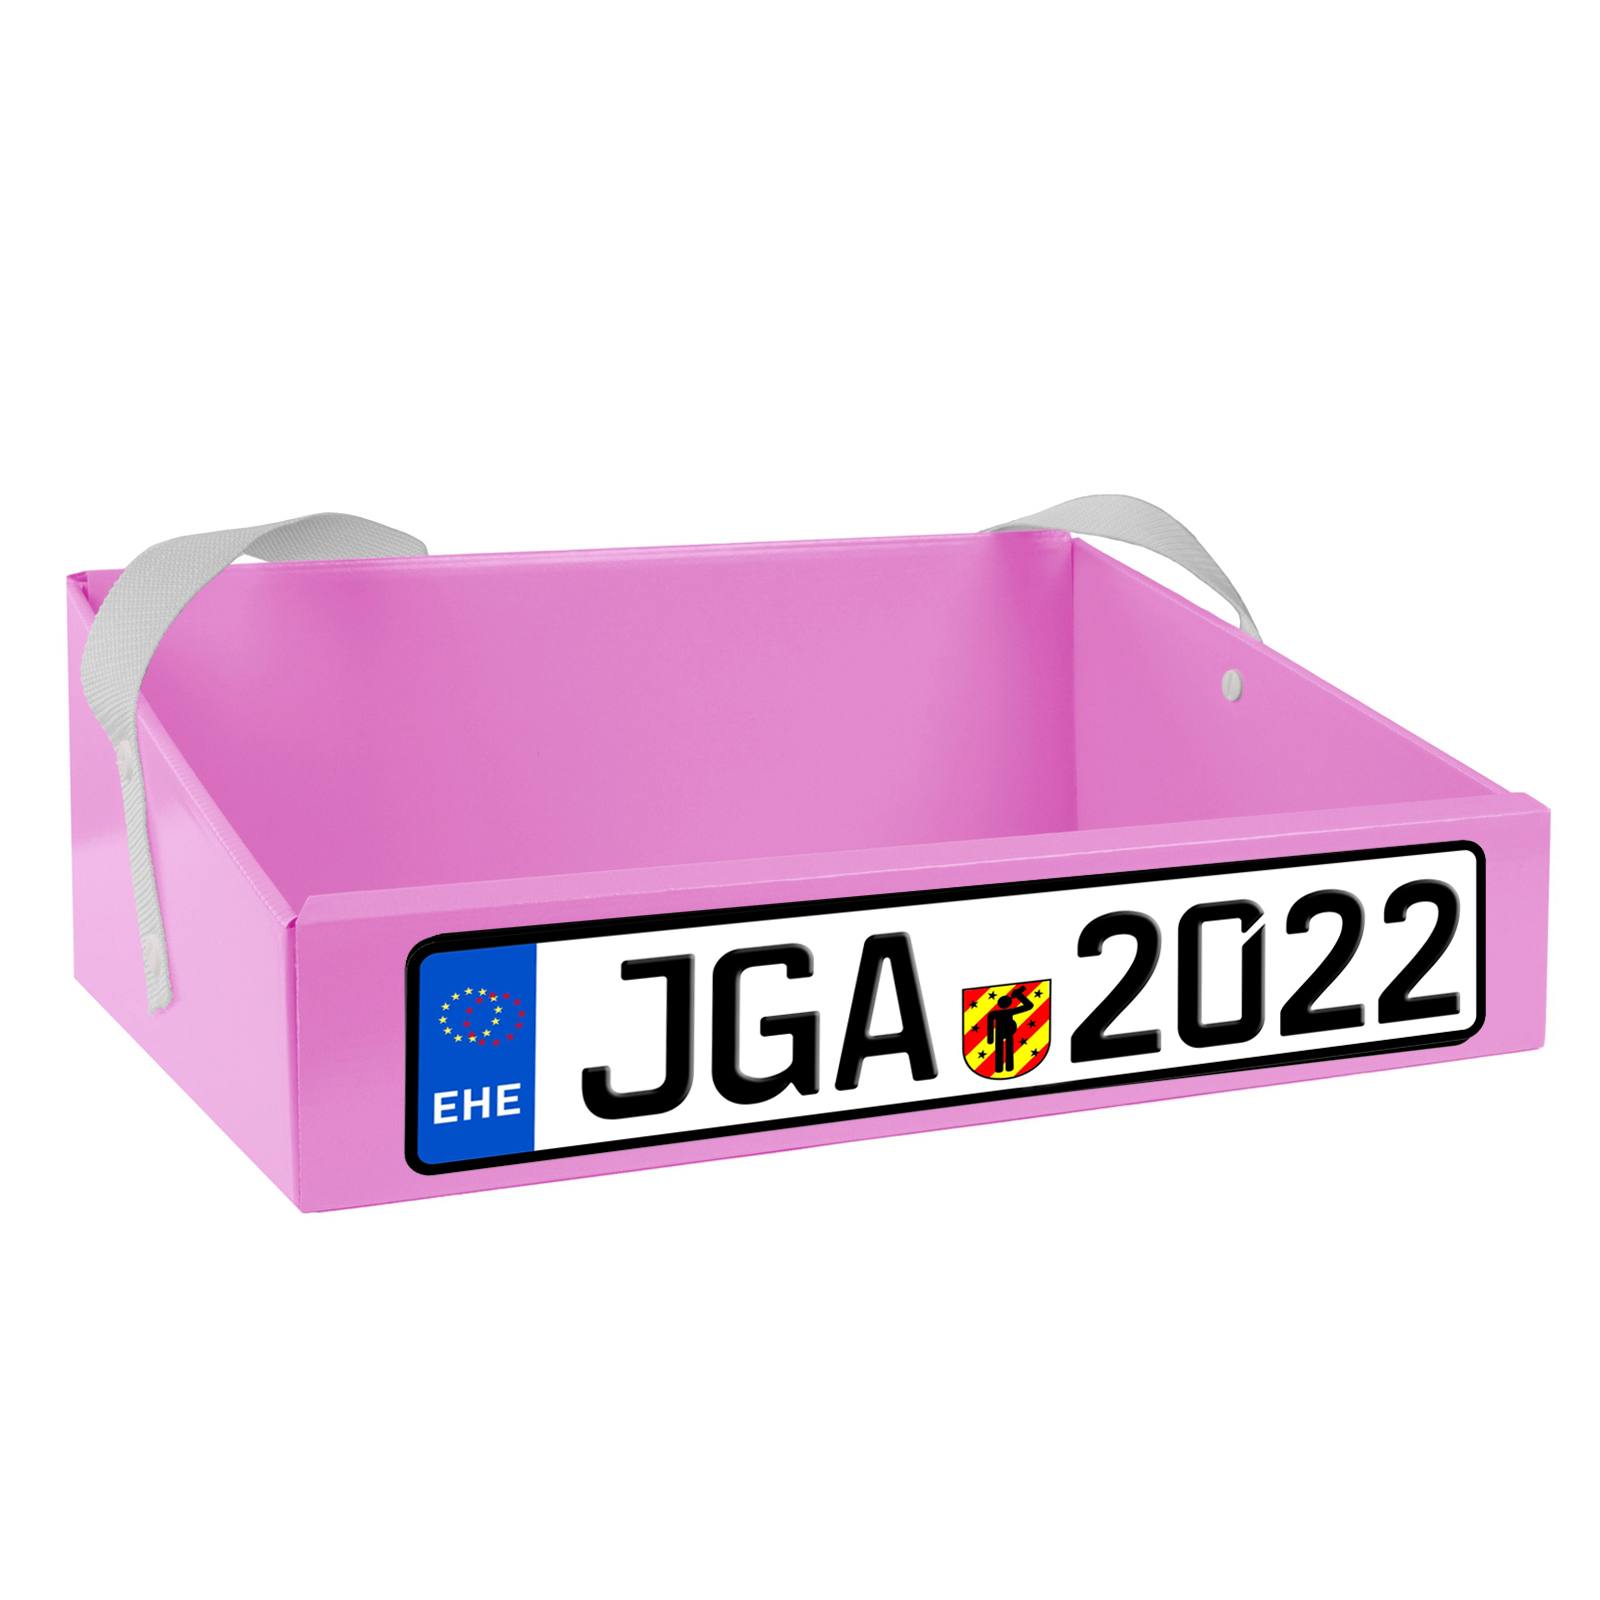 Bauchladen Kfz Jga 2022 rosa